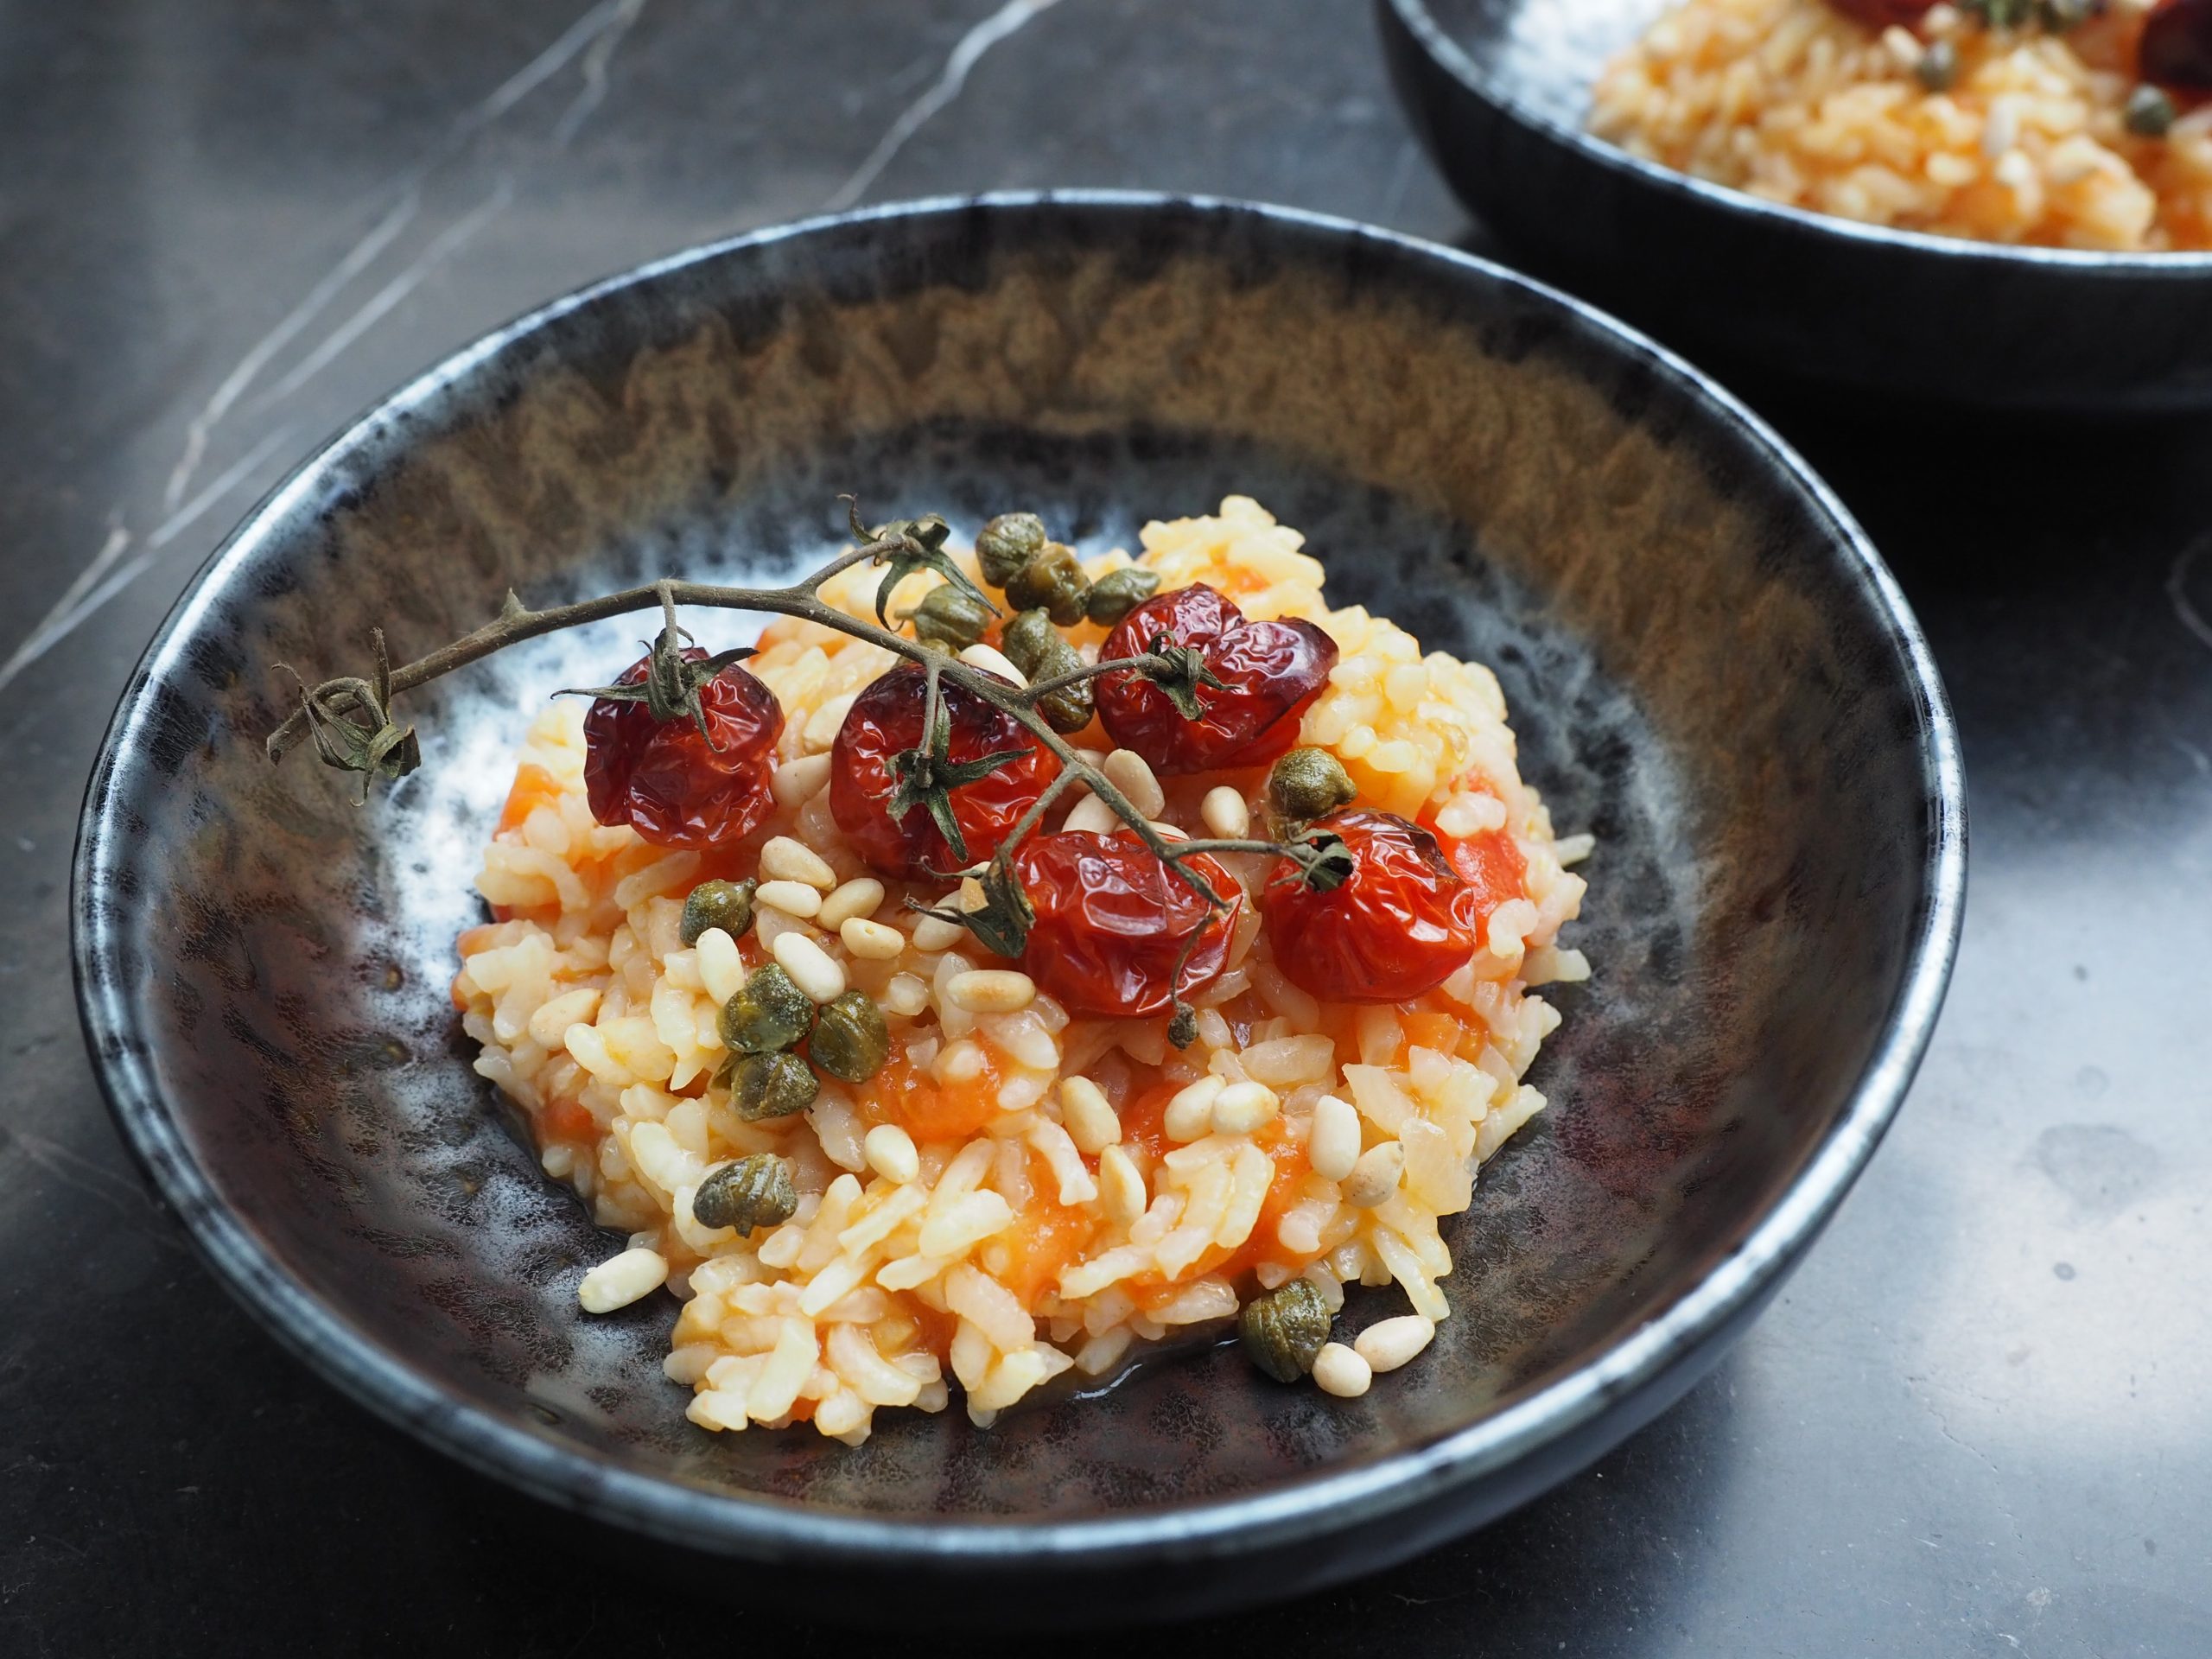 Tomato risotto recipe (vegan or vegetarian)